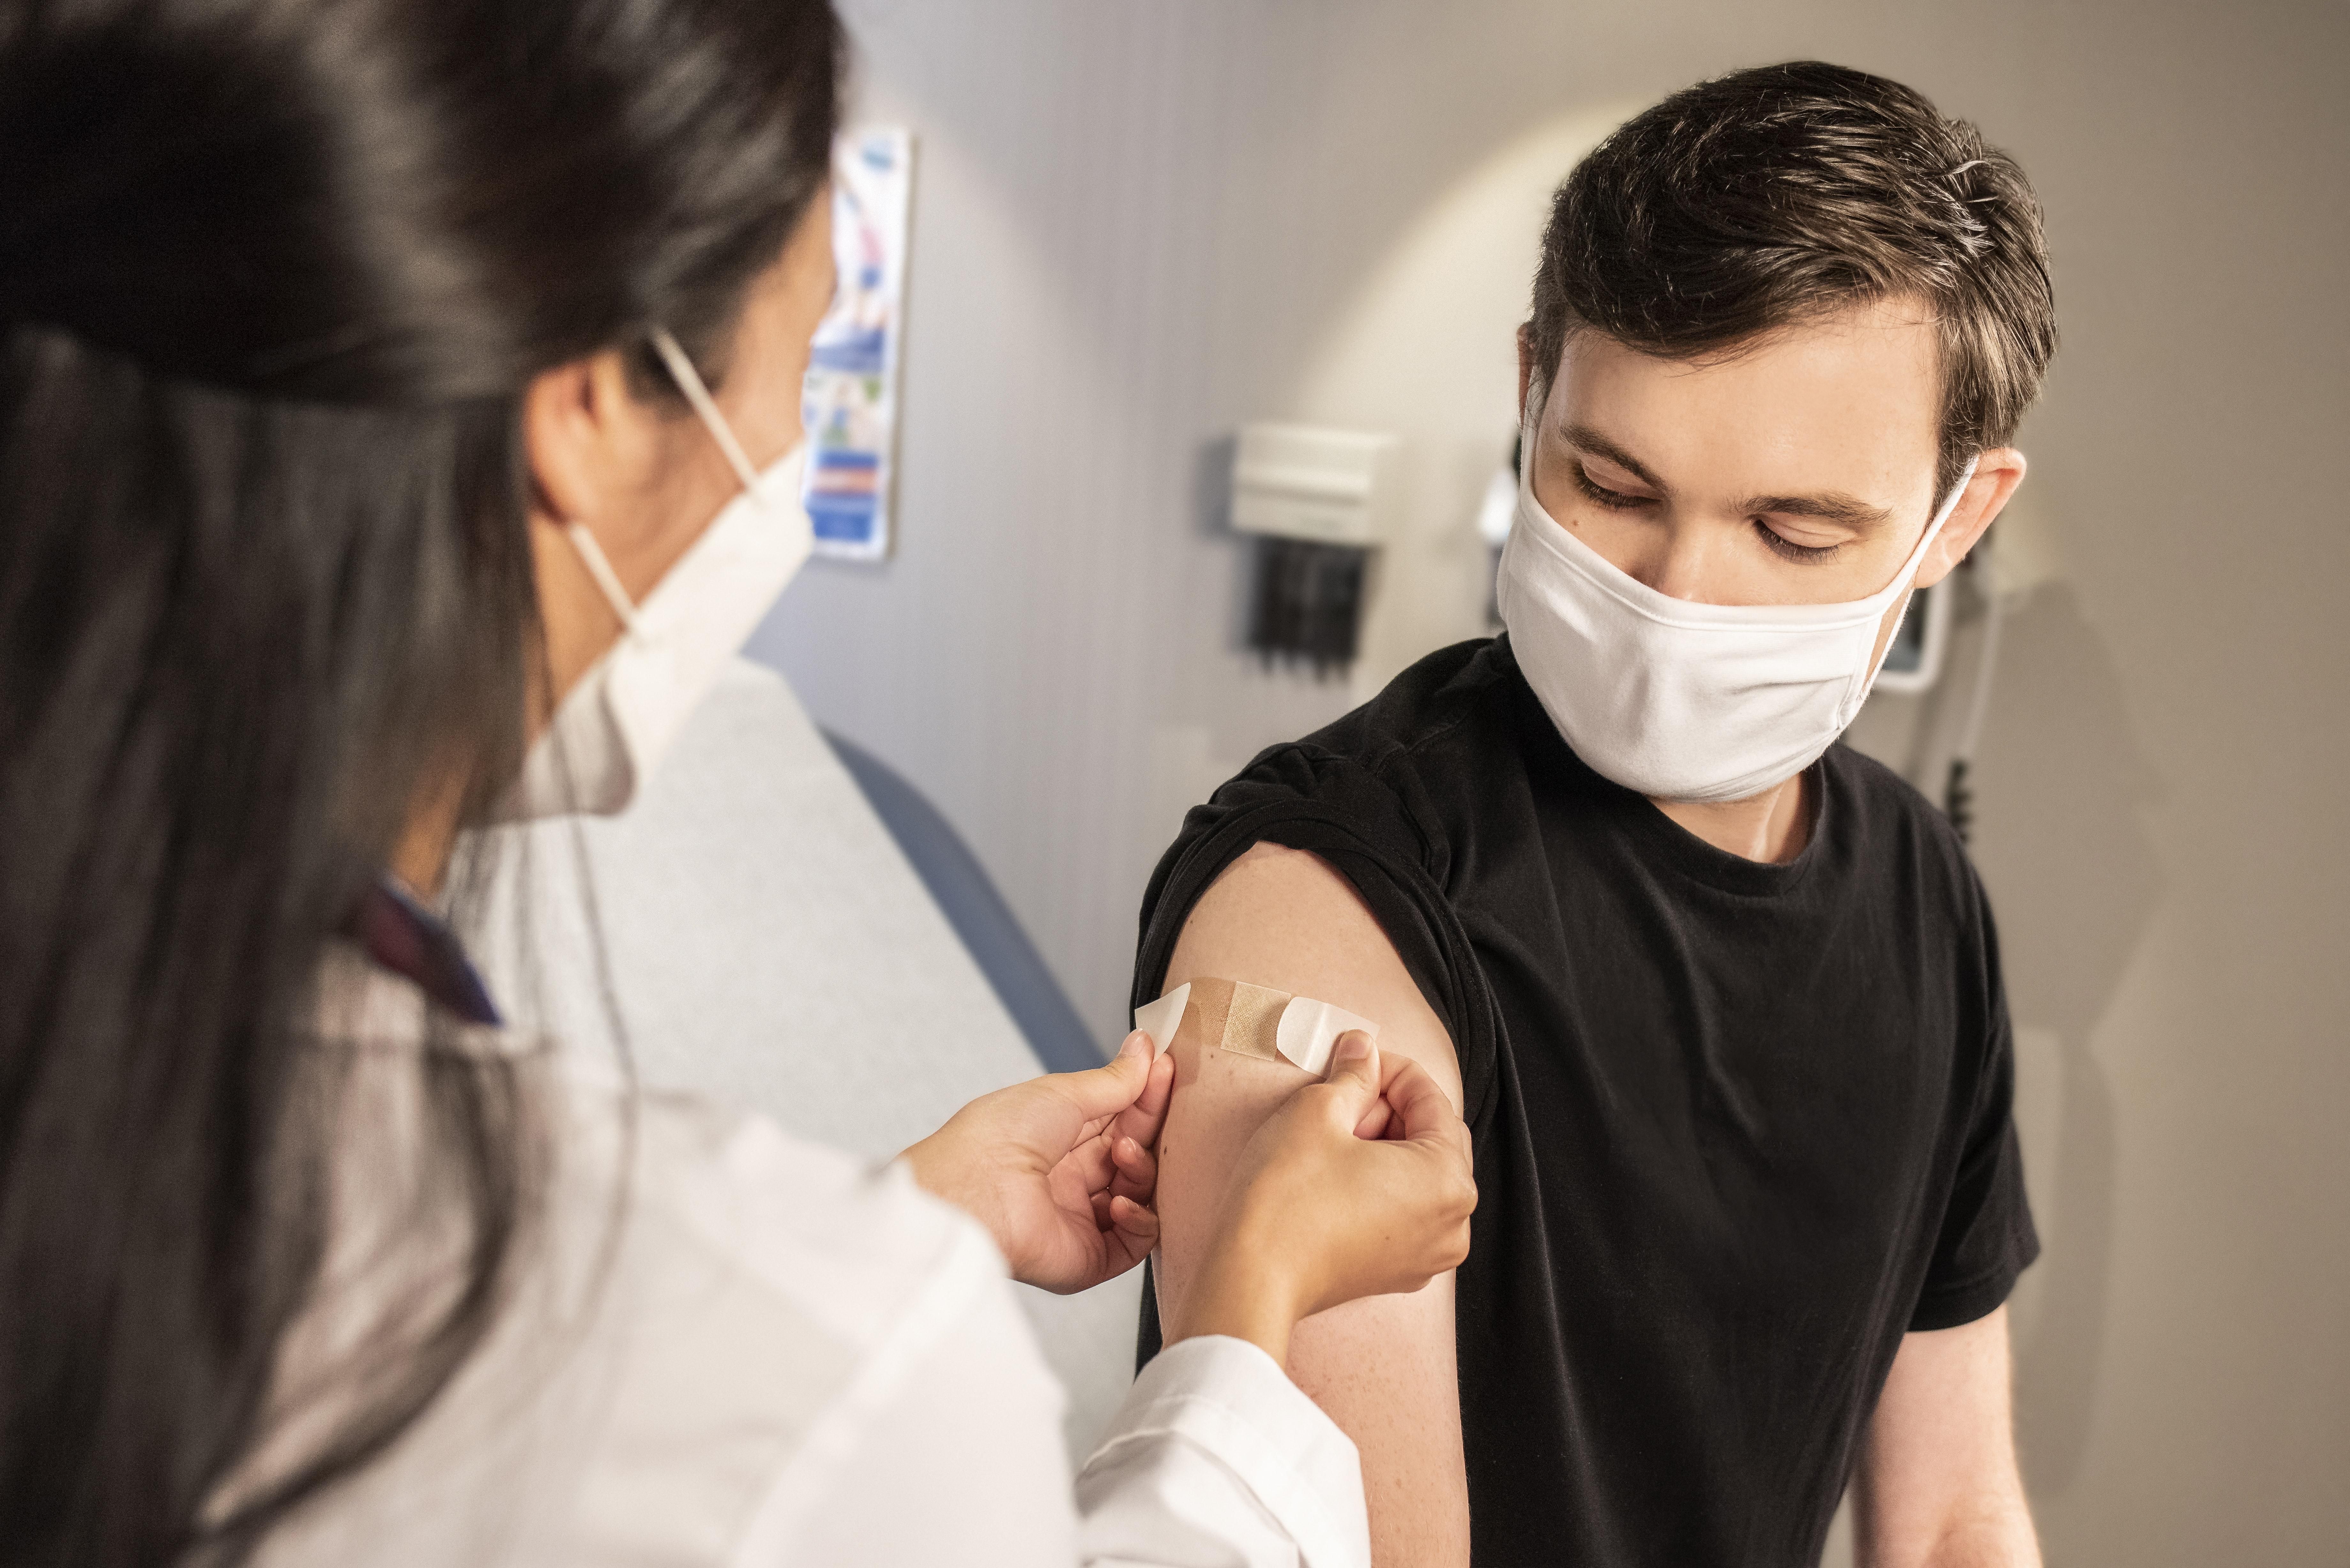 Побочные реакции от вакцинации: когда следует срочно обращаться к врачу